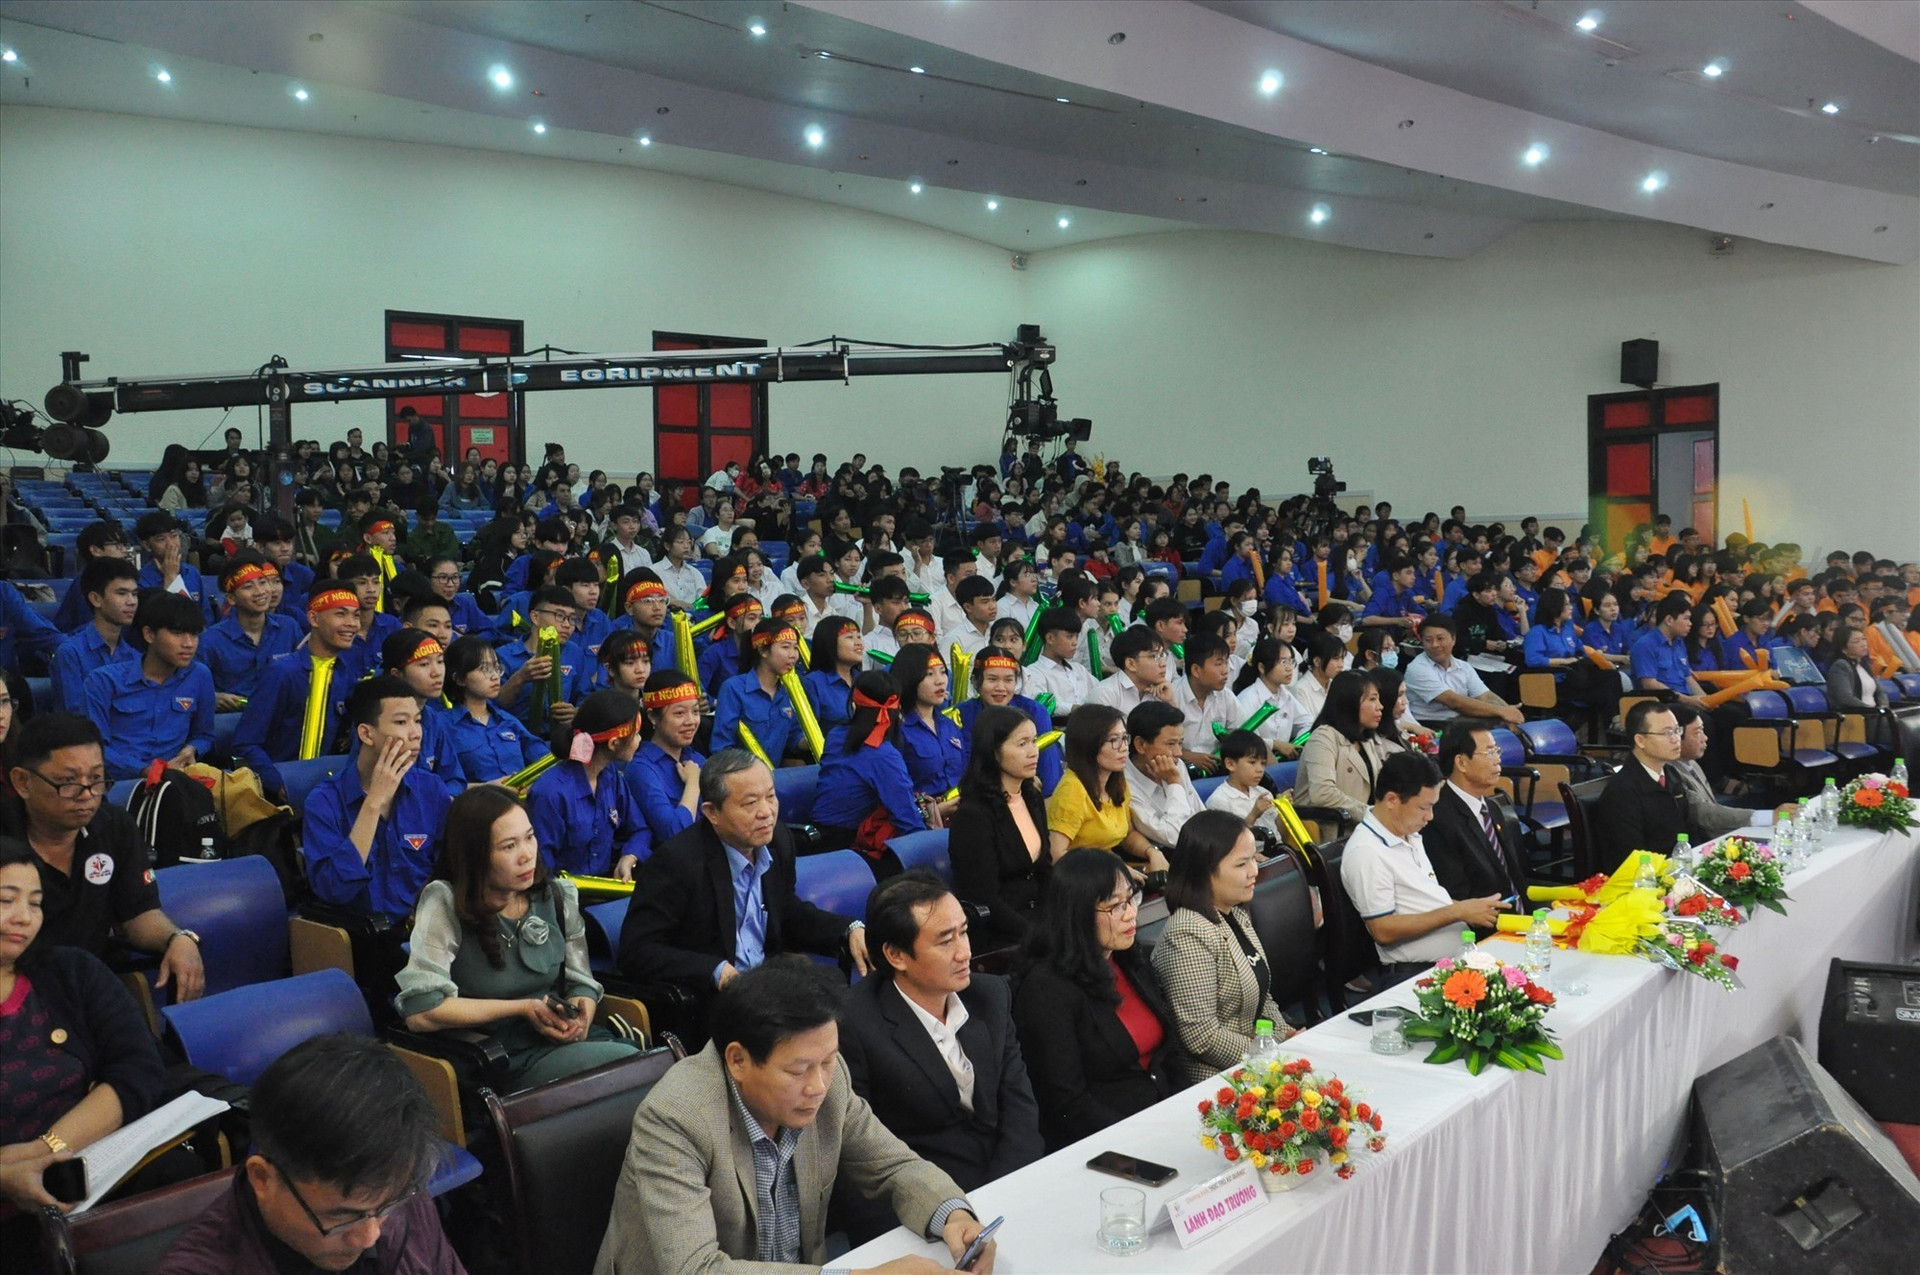 Khán giả ngồi chật kín hội trường Trường THPT chuyên Nguyễn Bỉnh Khiêm để theo dõi cuộc thi. Ảnh: X.P